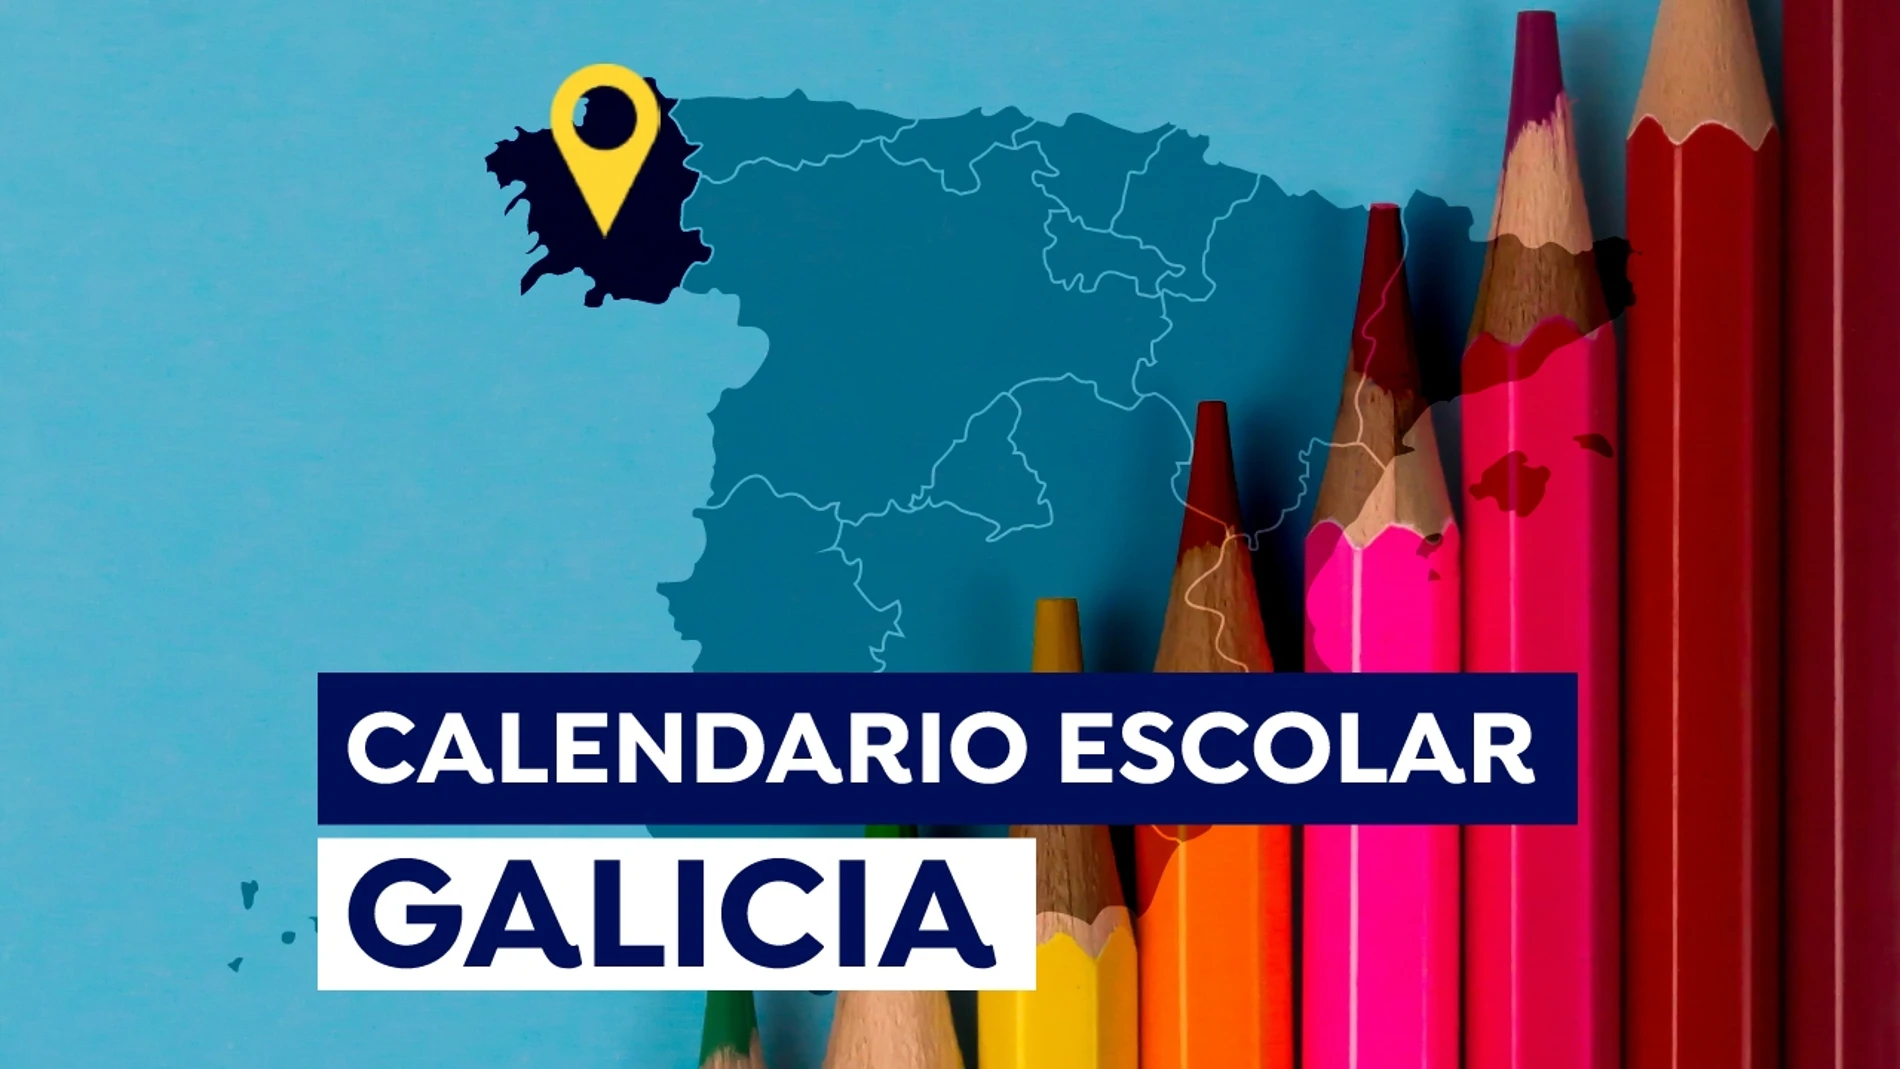 Calendario escolar en Galicia 2021-2022: Fechas de inicio de las clases, días lectivos y vacaciones